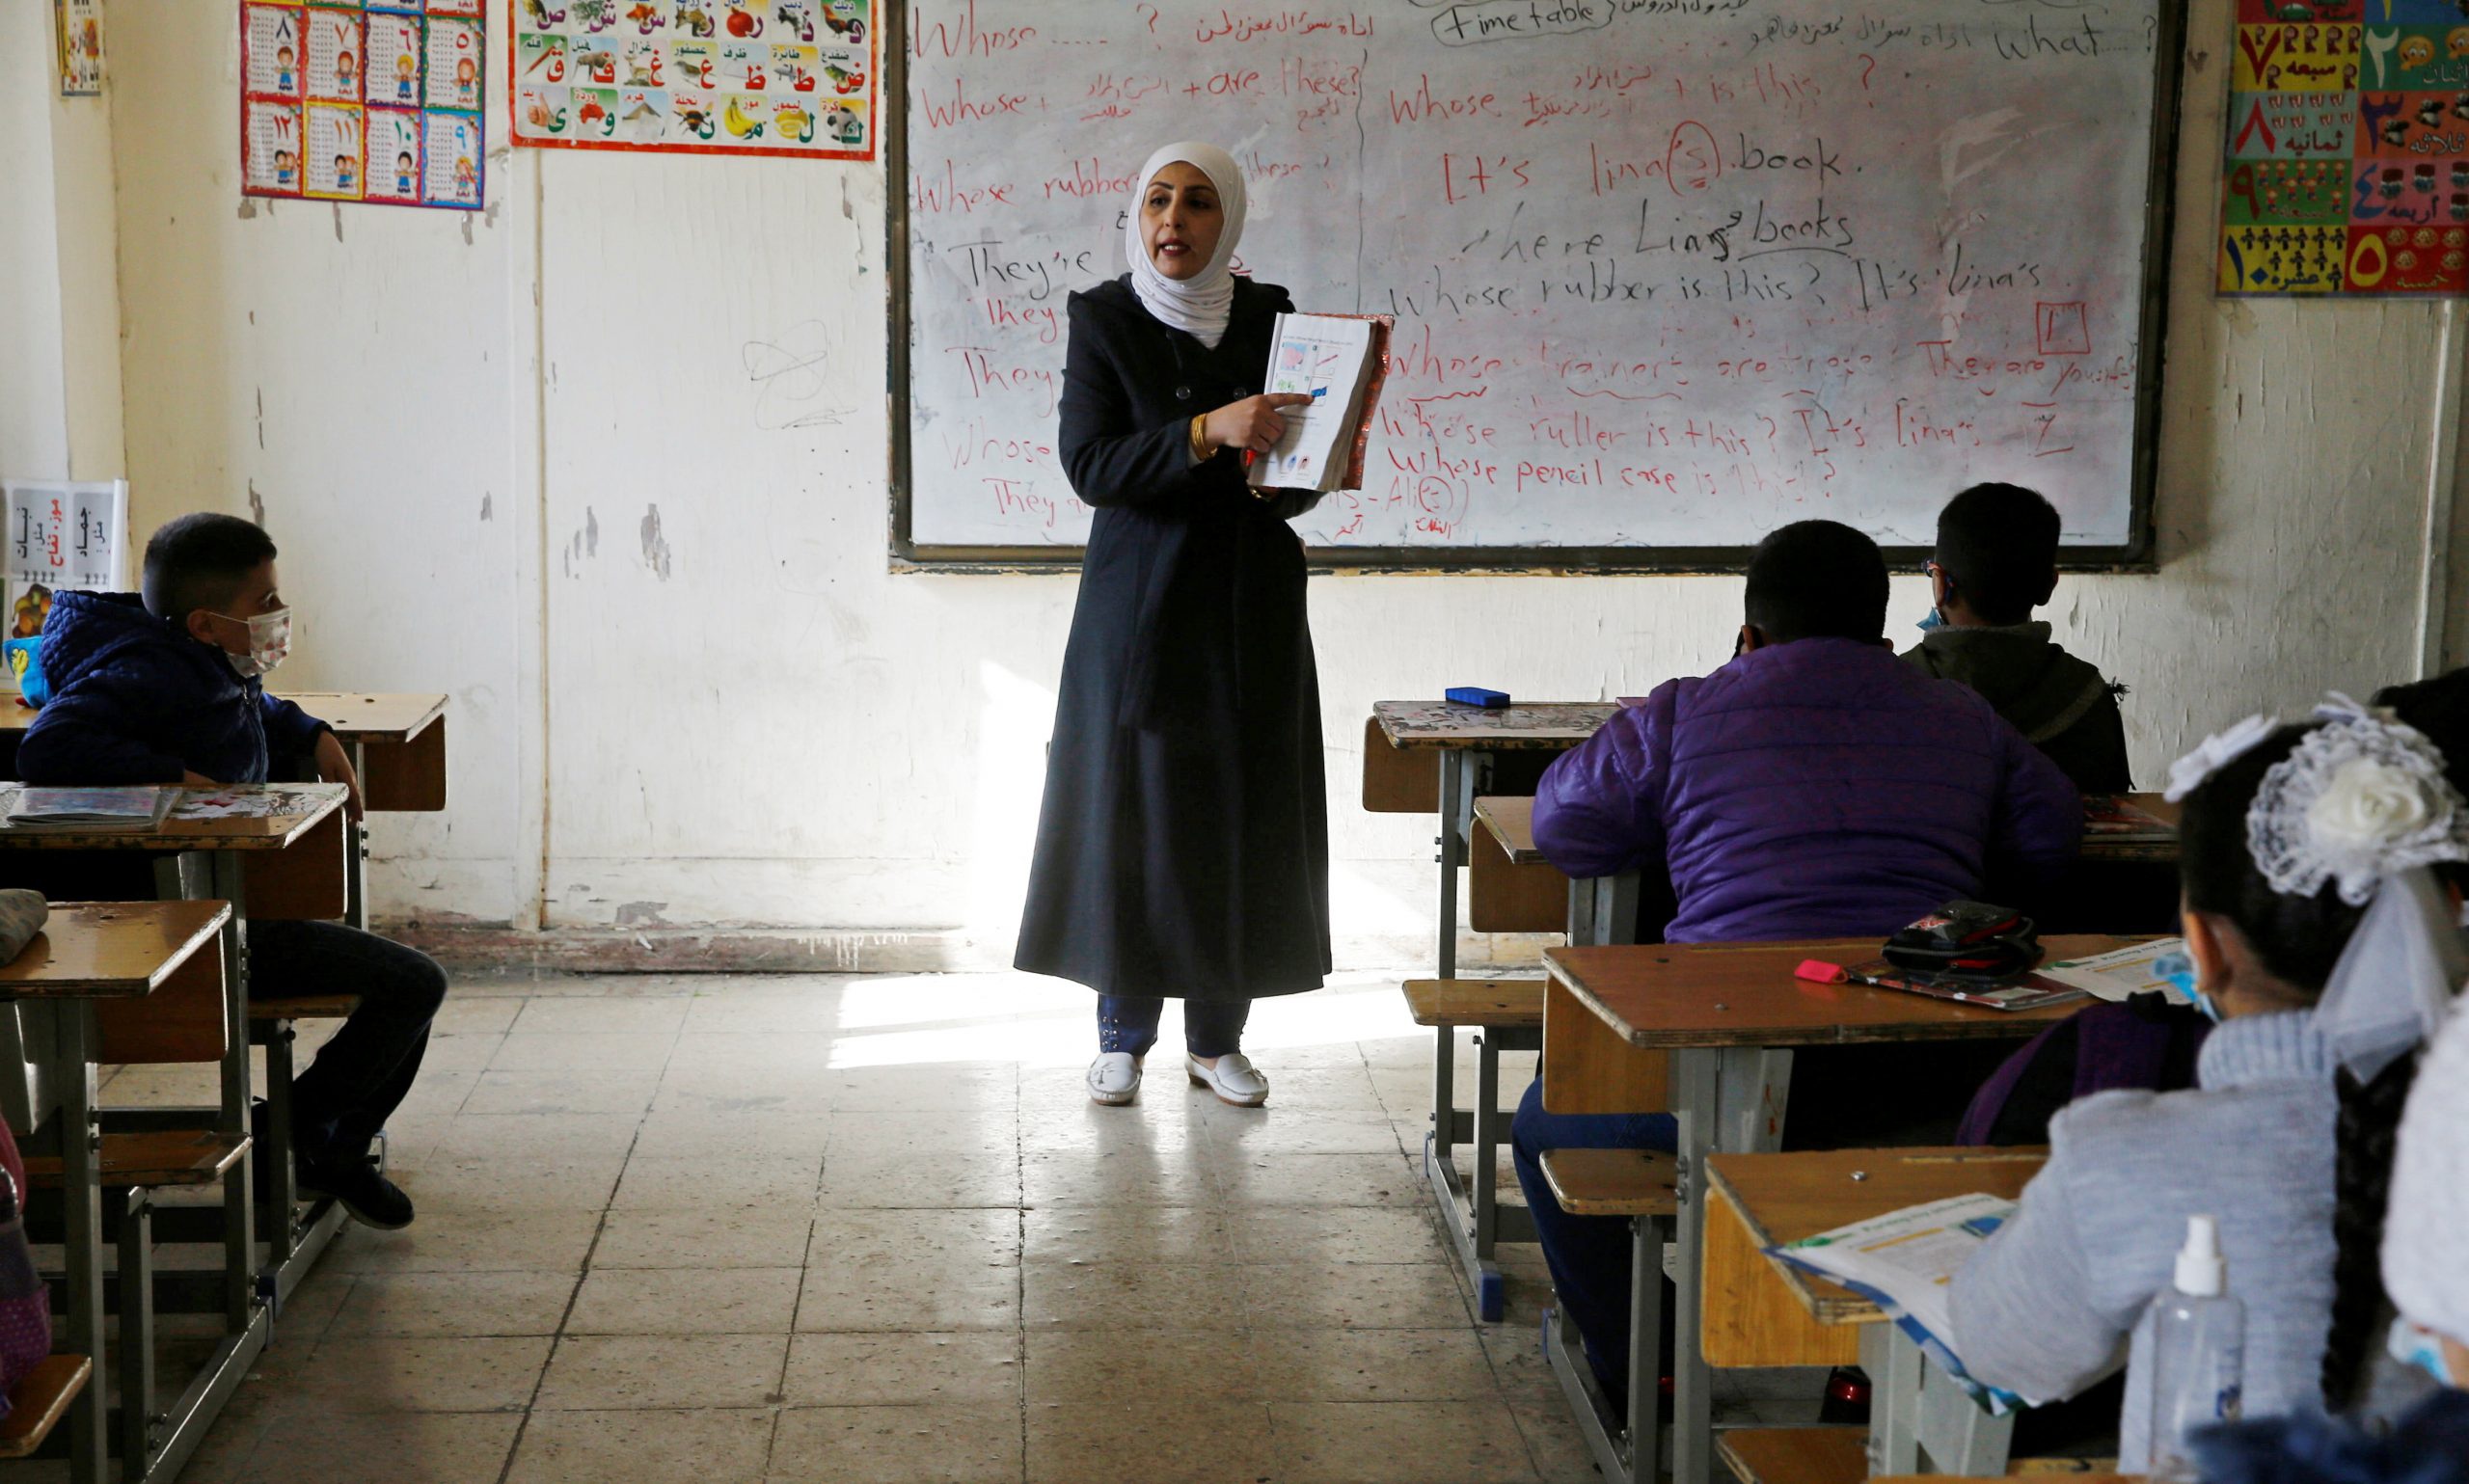 ظهور نسل کم سواد و فقیر در اقلیم کردستان و عراق، پیامد آموزش ناقص در دوران کرونا